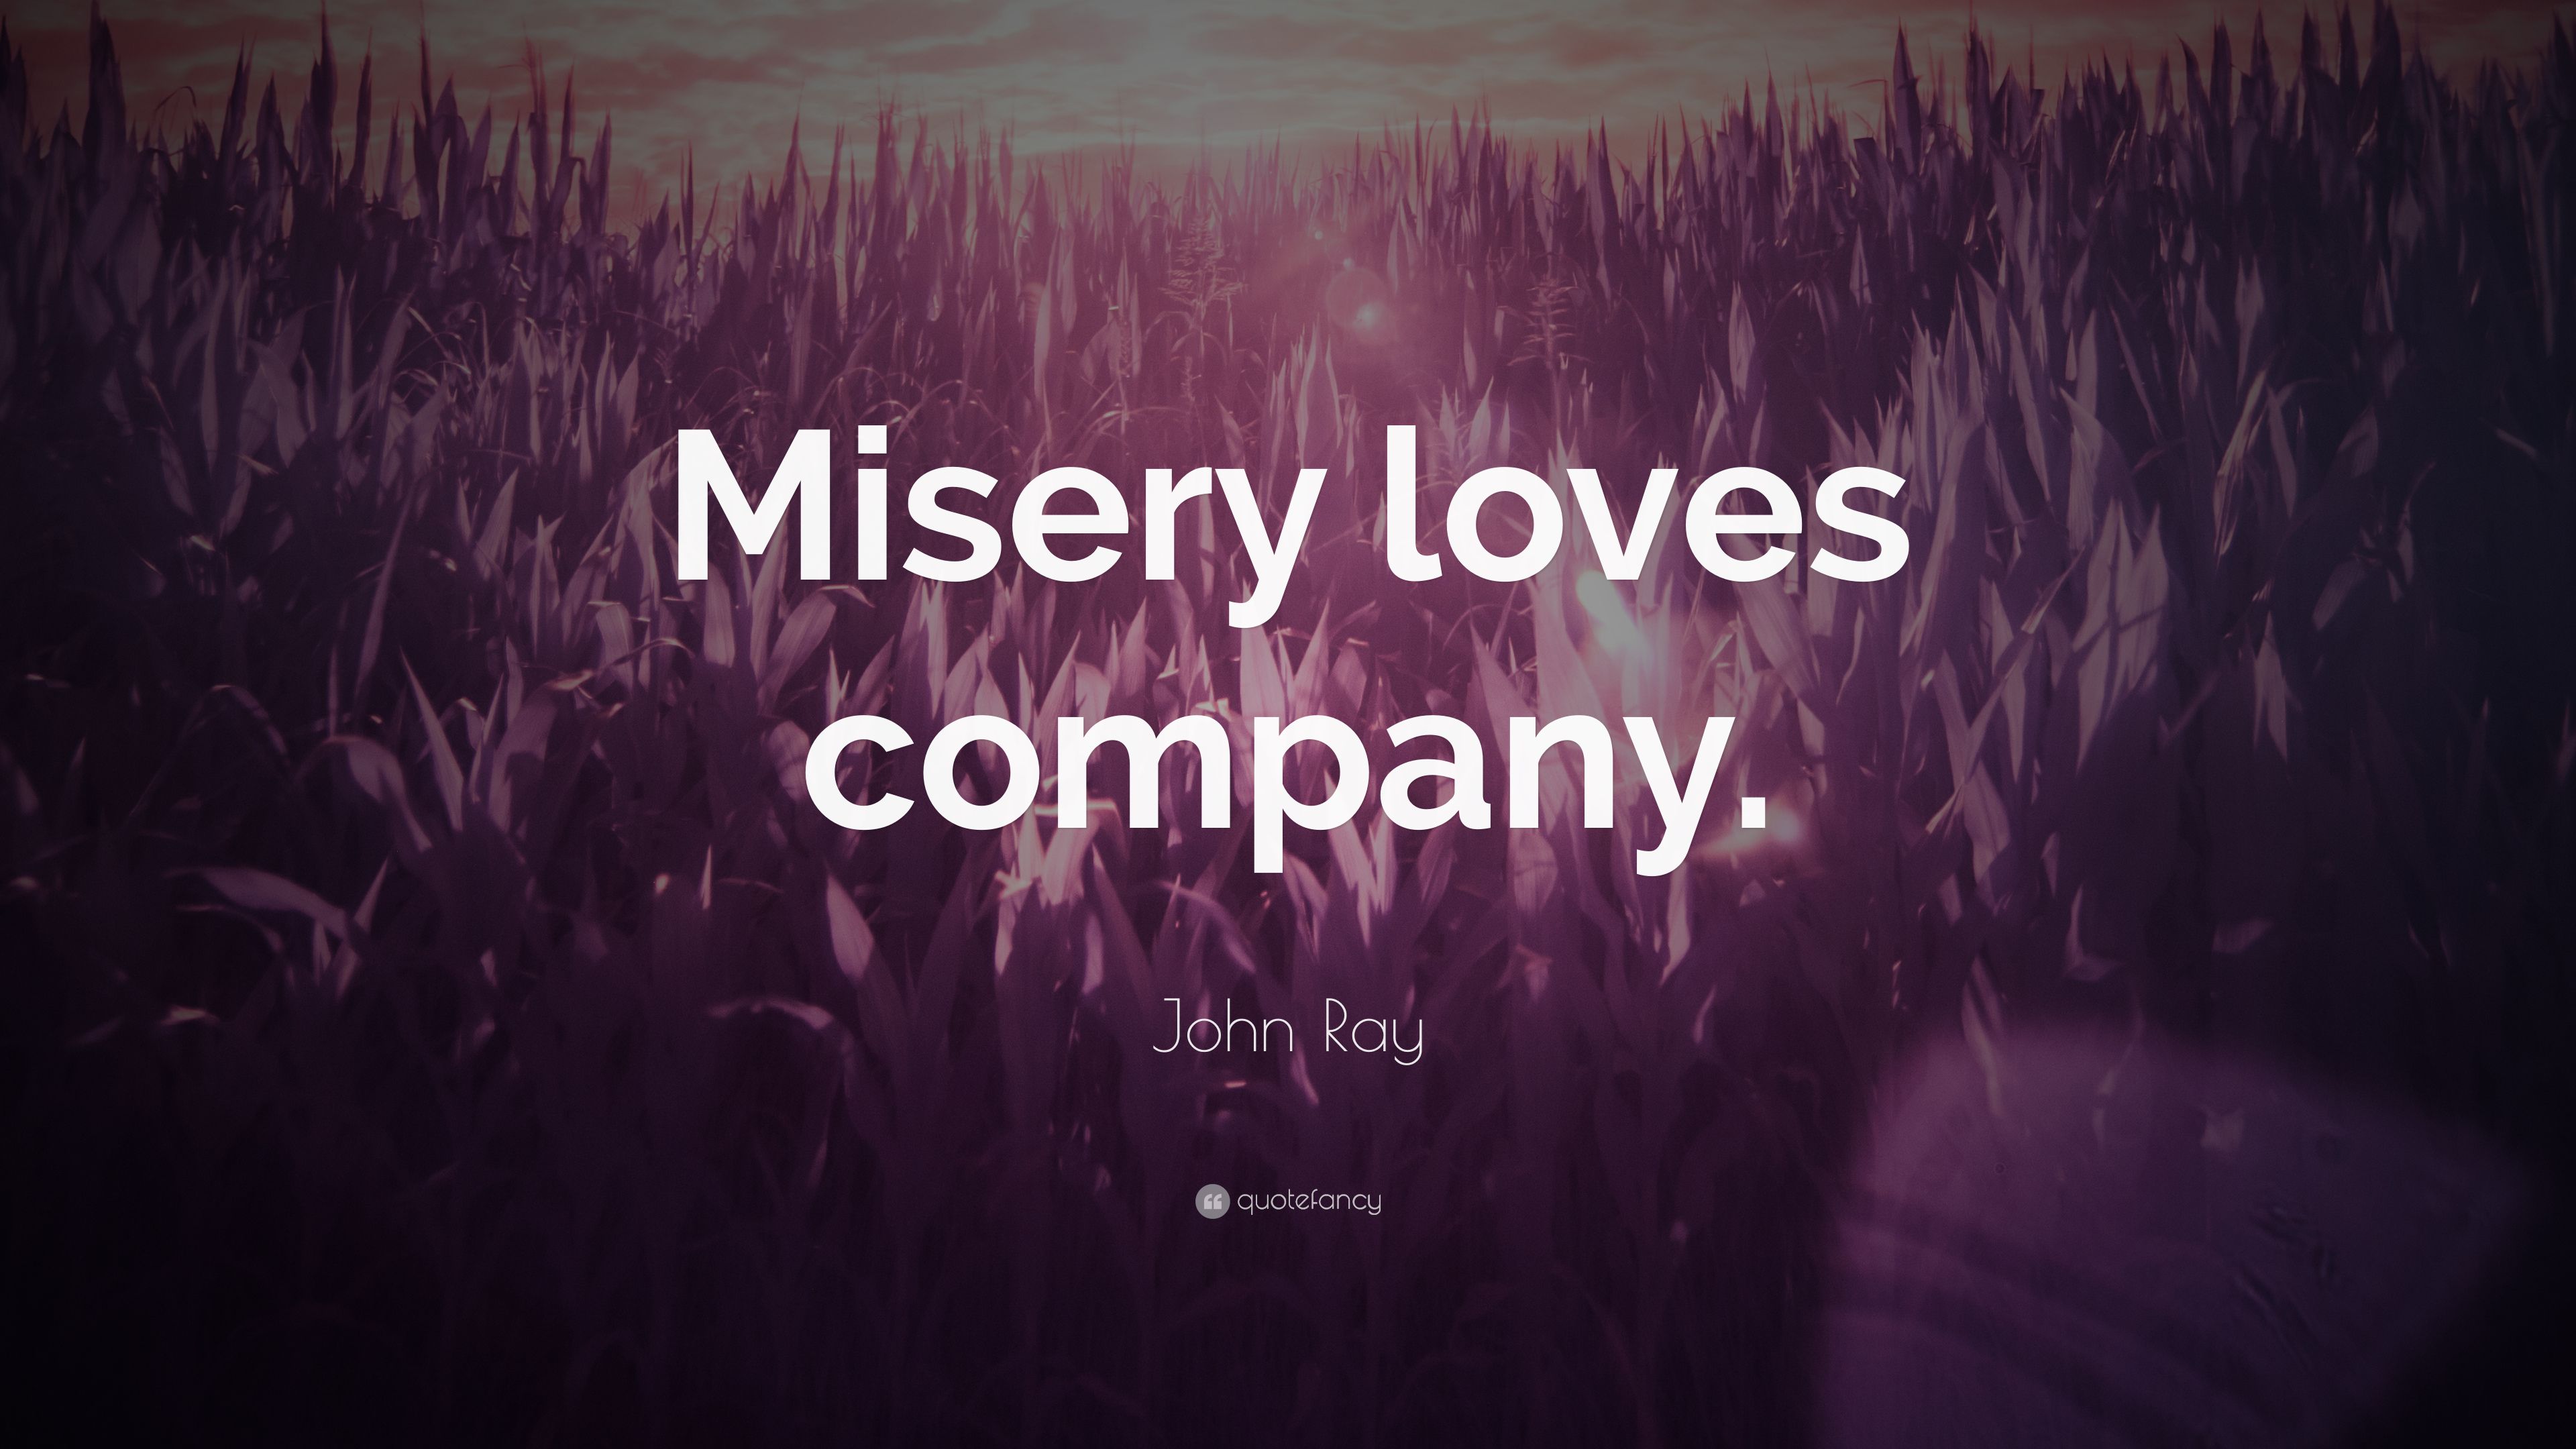 John Ray Quote: “Misery loves company.” (7 wallpaper)